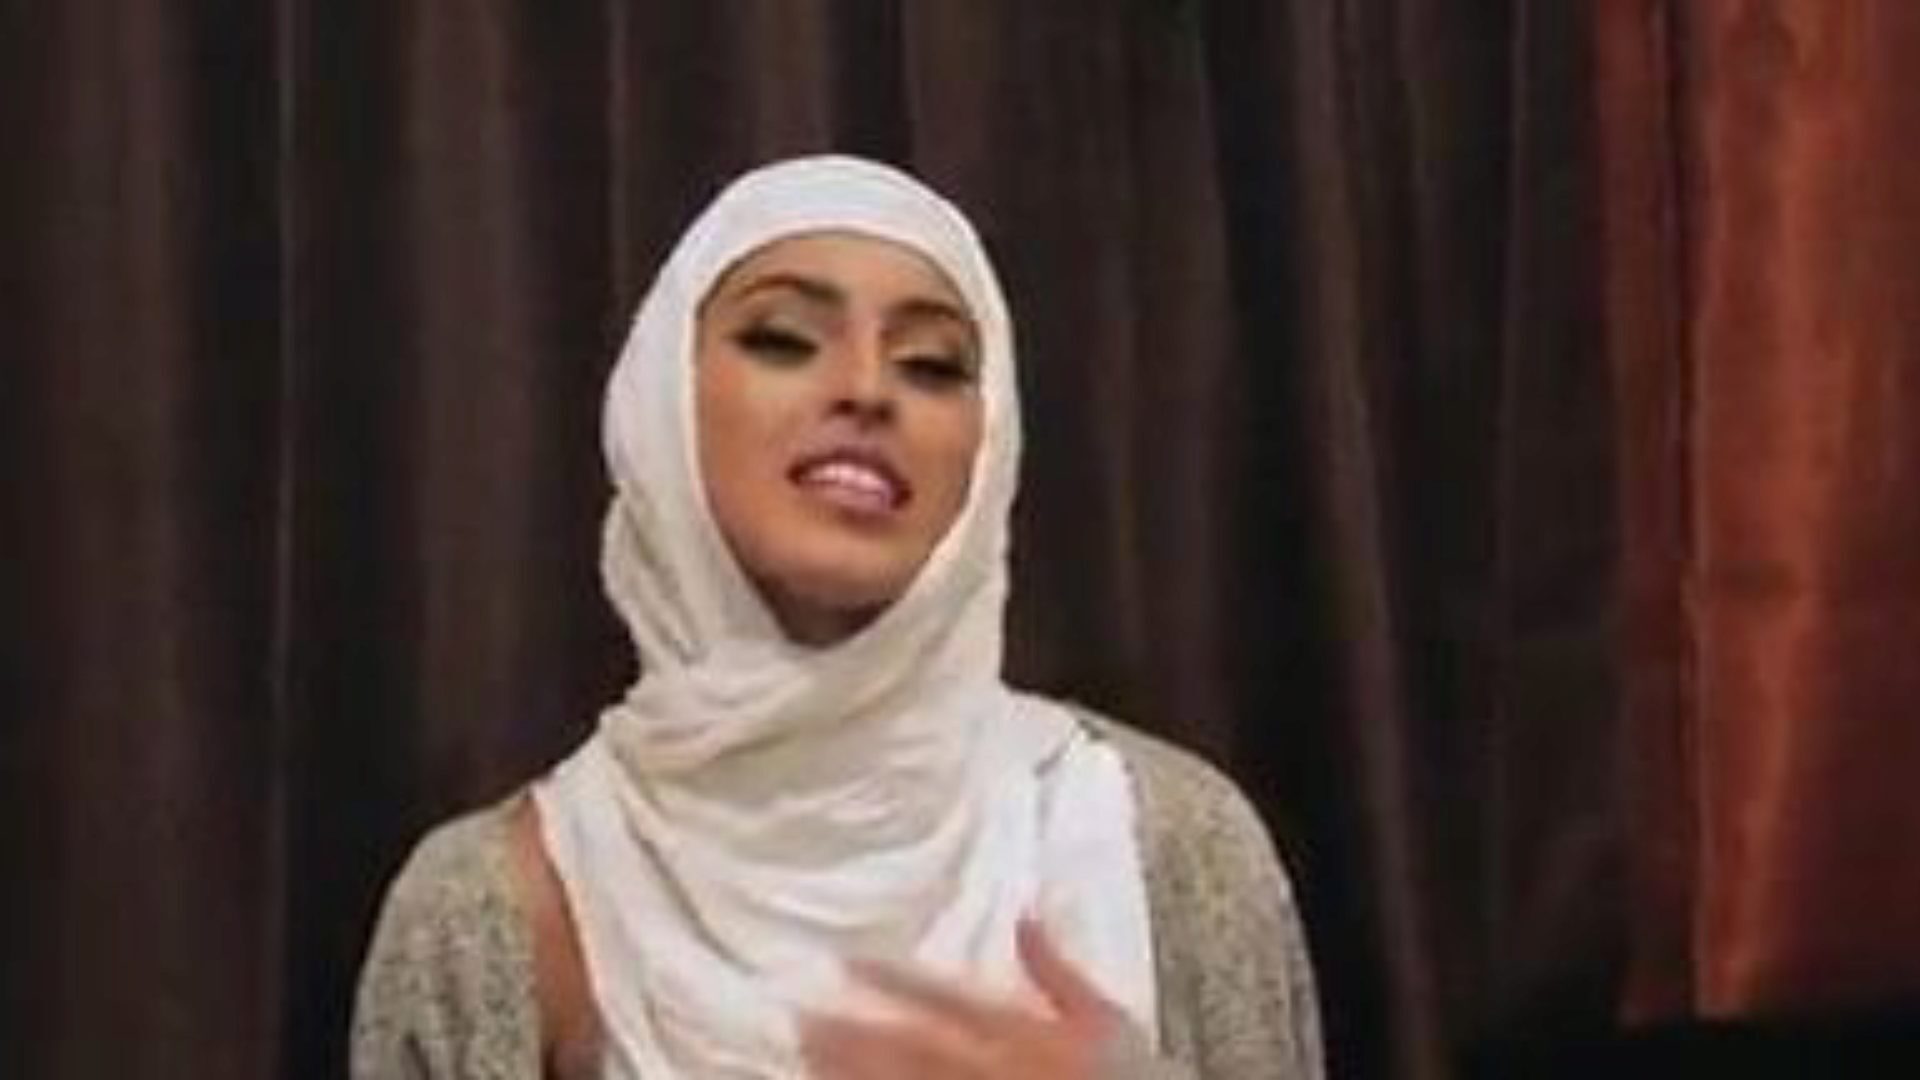 ragazze timide inesperte scopano nei loro hijab: porno gratis 5e guarda ragazze timide inesperte scopare nei loro episodi di hijab su xhamster - l'archivio definitivo di xnxx gratis gratis e bel ami video porno hardcore tube